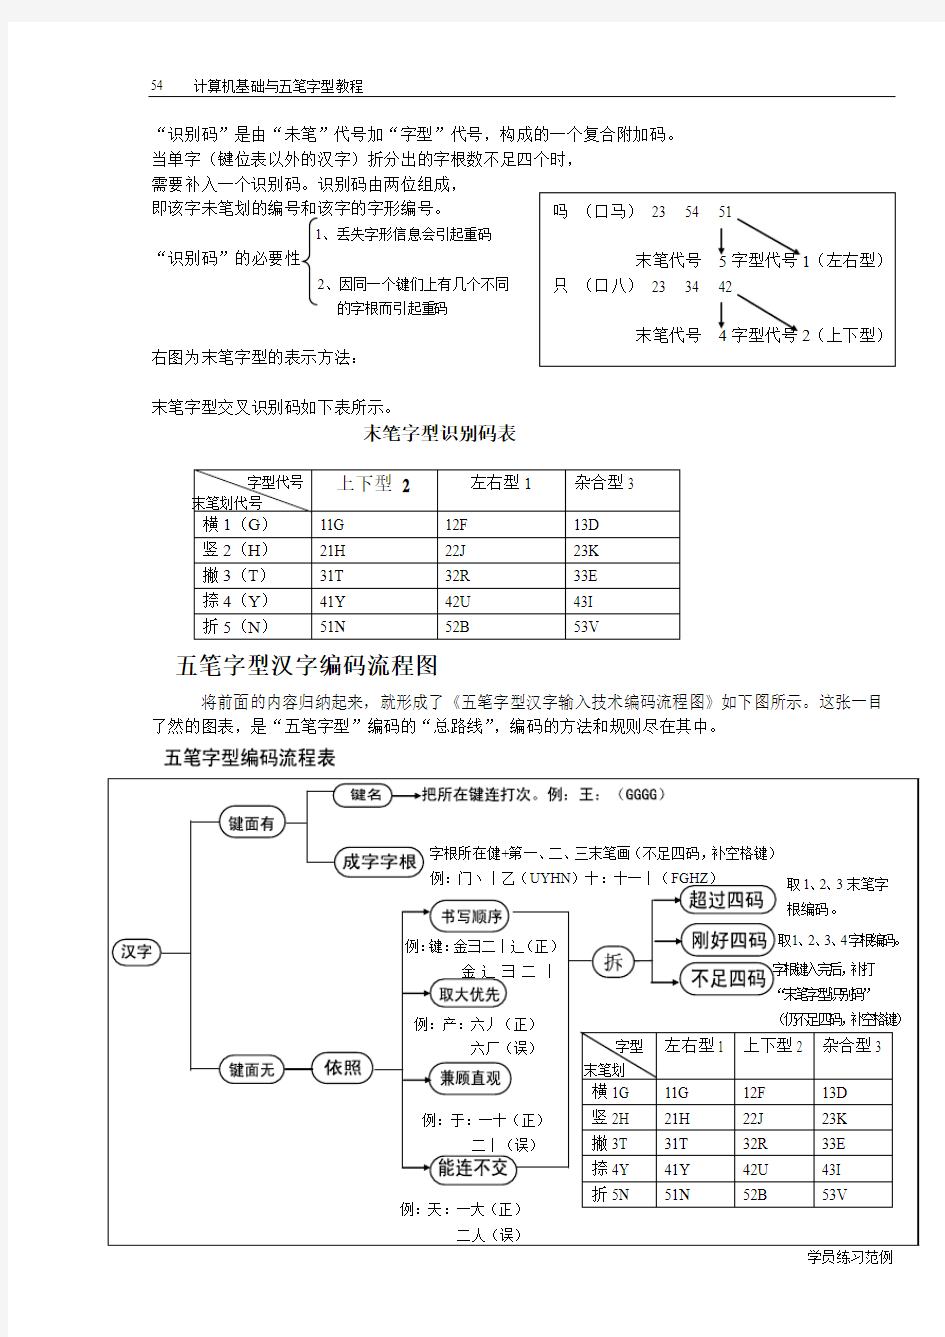 五笔字型汉字编码流程